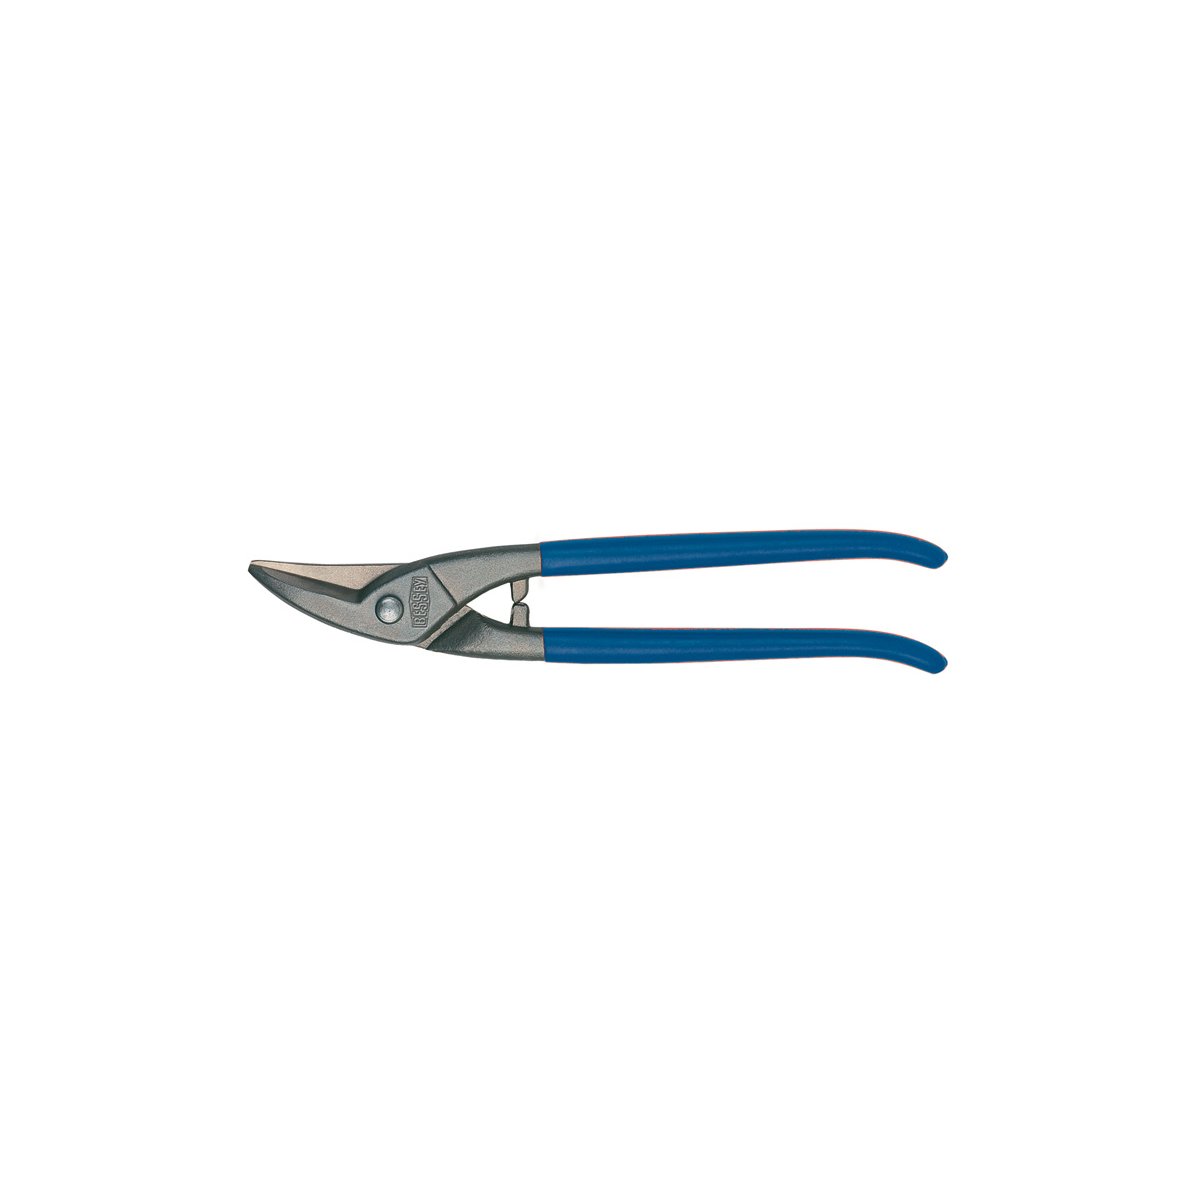 D107-275 Ножницы по металлу, для прорезания отверстий, правые, рез: 1.0 мм, 275 мм, короткий прямой и фигурный рез